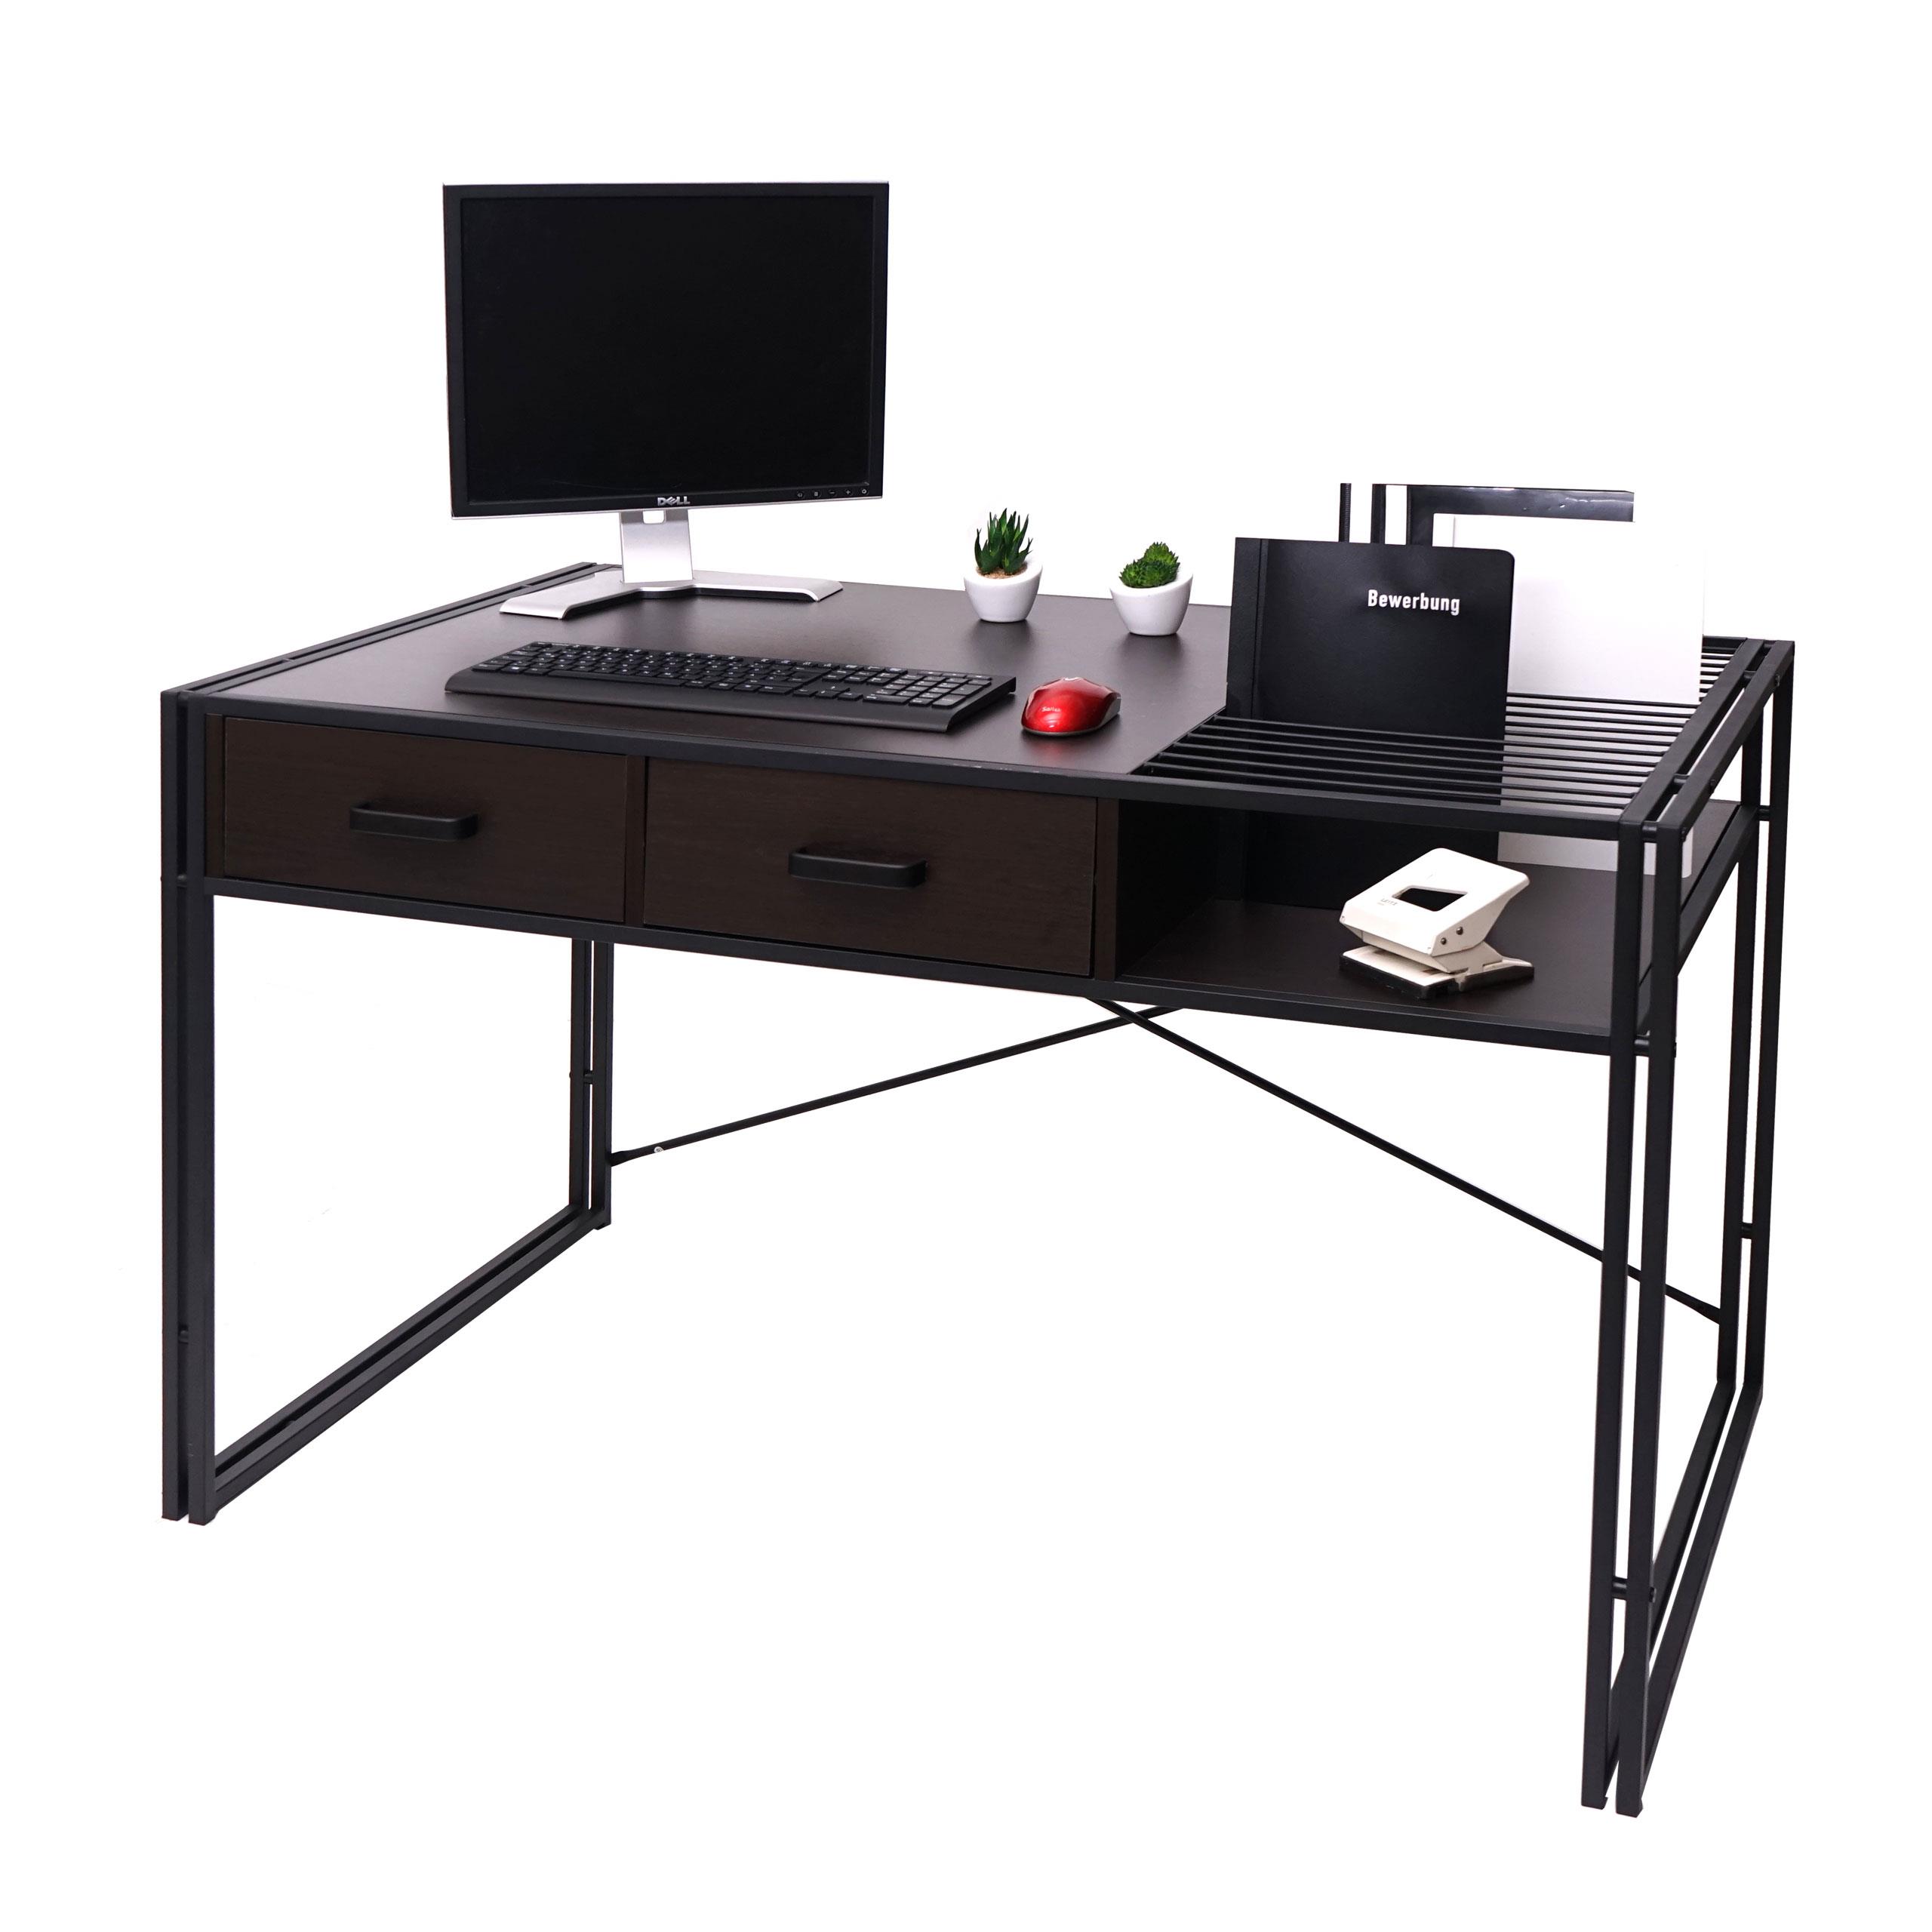 Mesa para Ordenador ROXY, 120x70x76 cm, color Marrón oscuro 